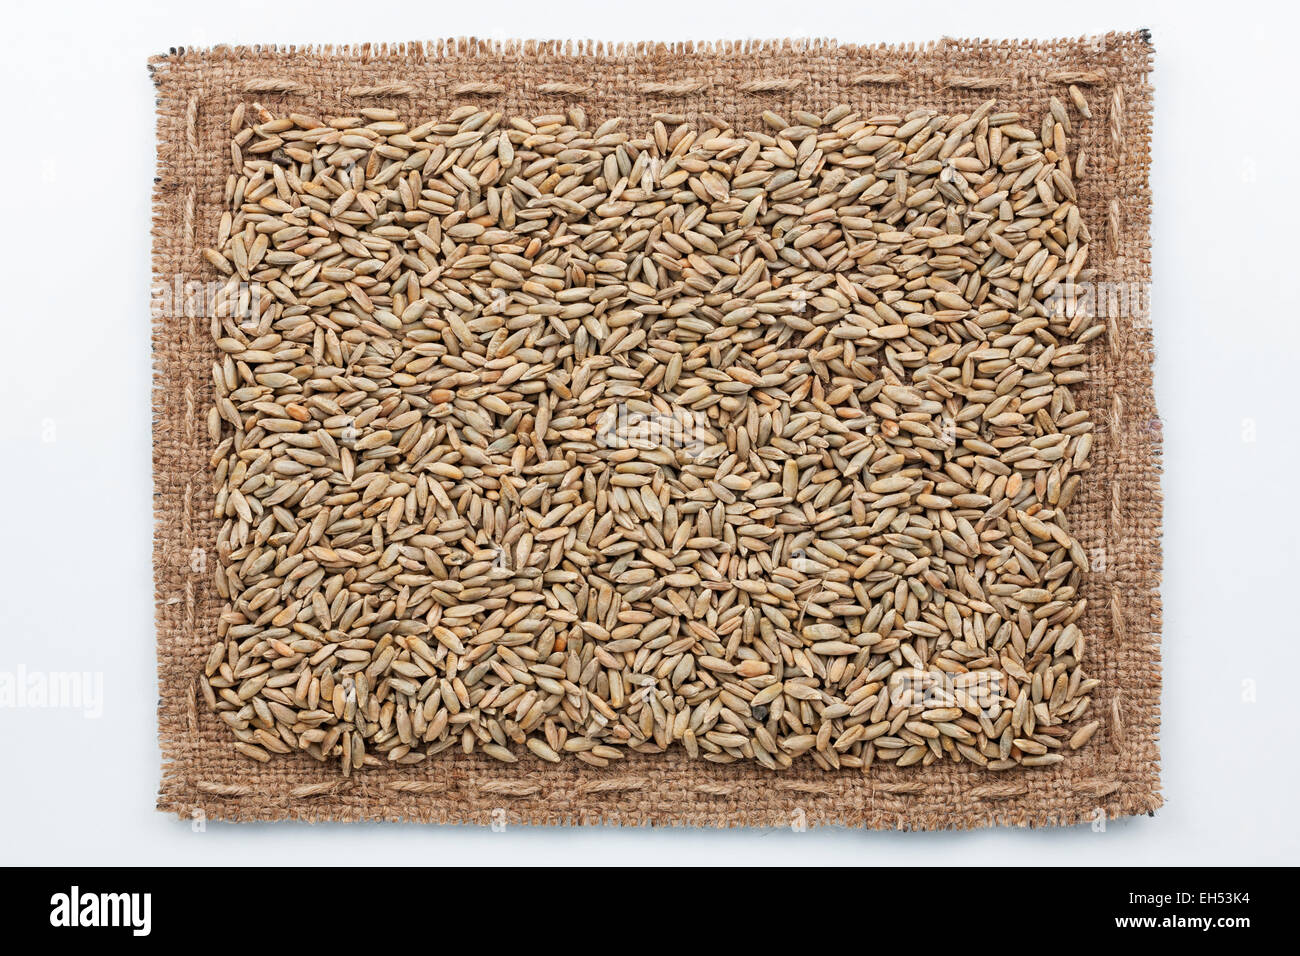 Rahmen aus Sackleinen und Roggen Korn, liegend auf einem weißen Hintergrund Stockfoto